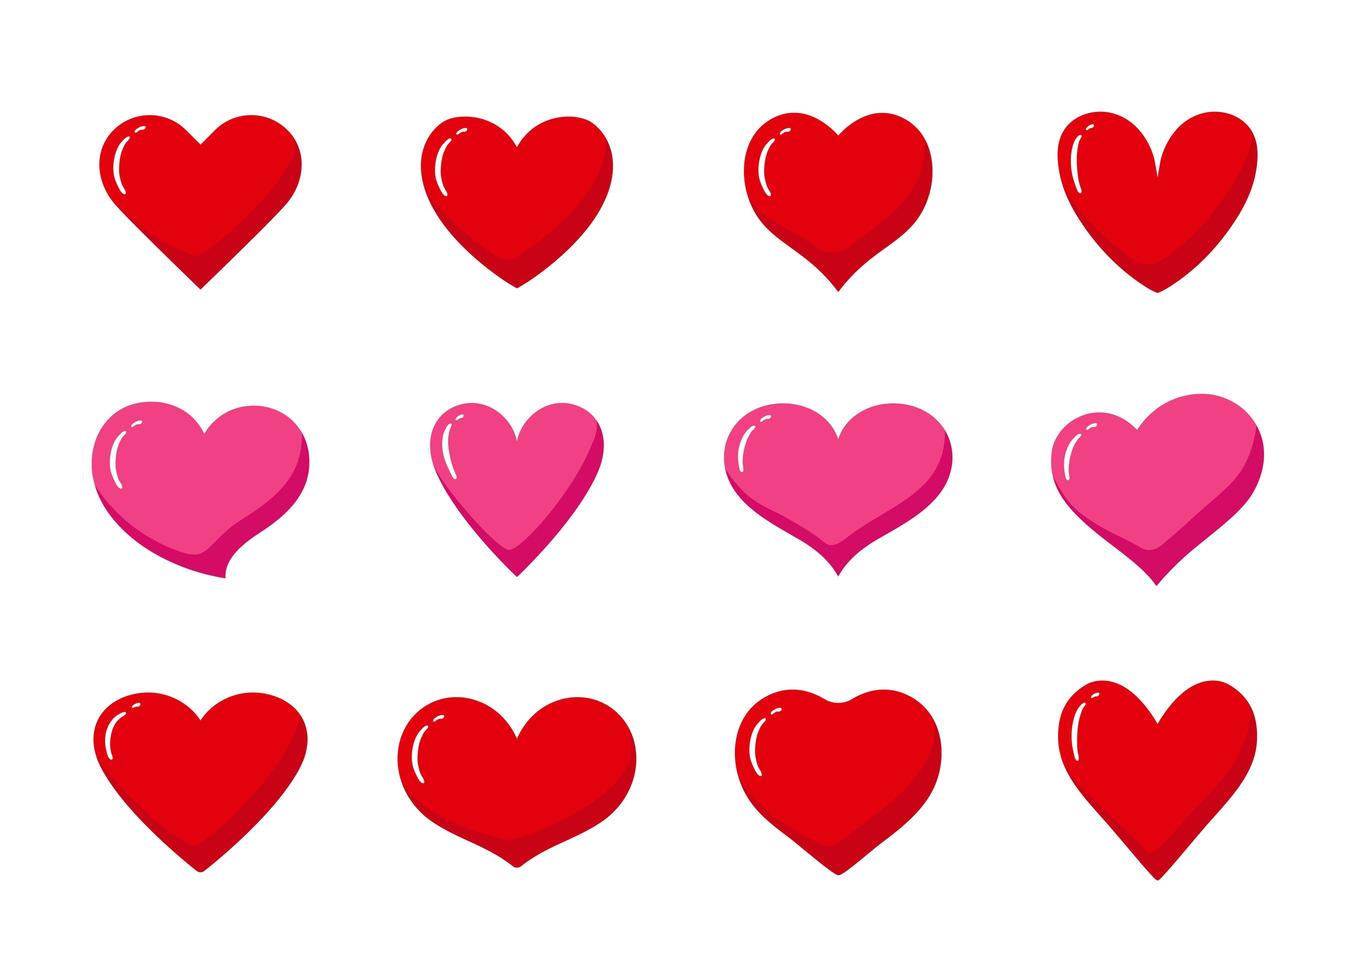 Satz von roten und rosa herzförmigen Symbolen. Sammlung verschiedener romantischer Herzsymbole für Website, Aufkleber, Label, Tattoo-Kunst, Liebeslogo und Valentinstag. vektor